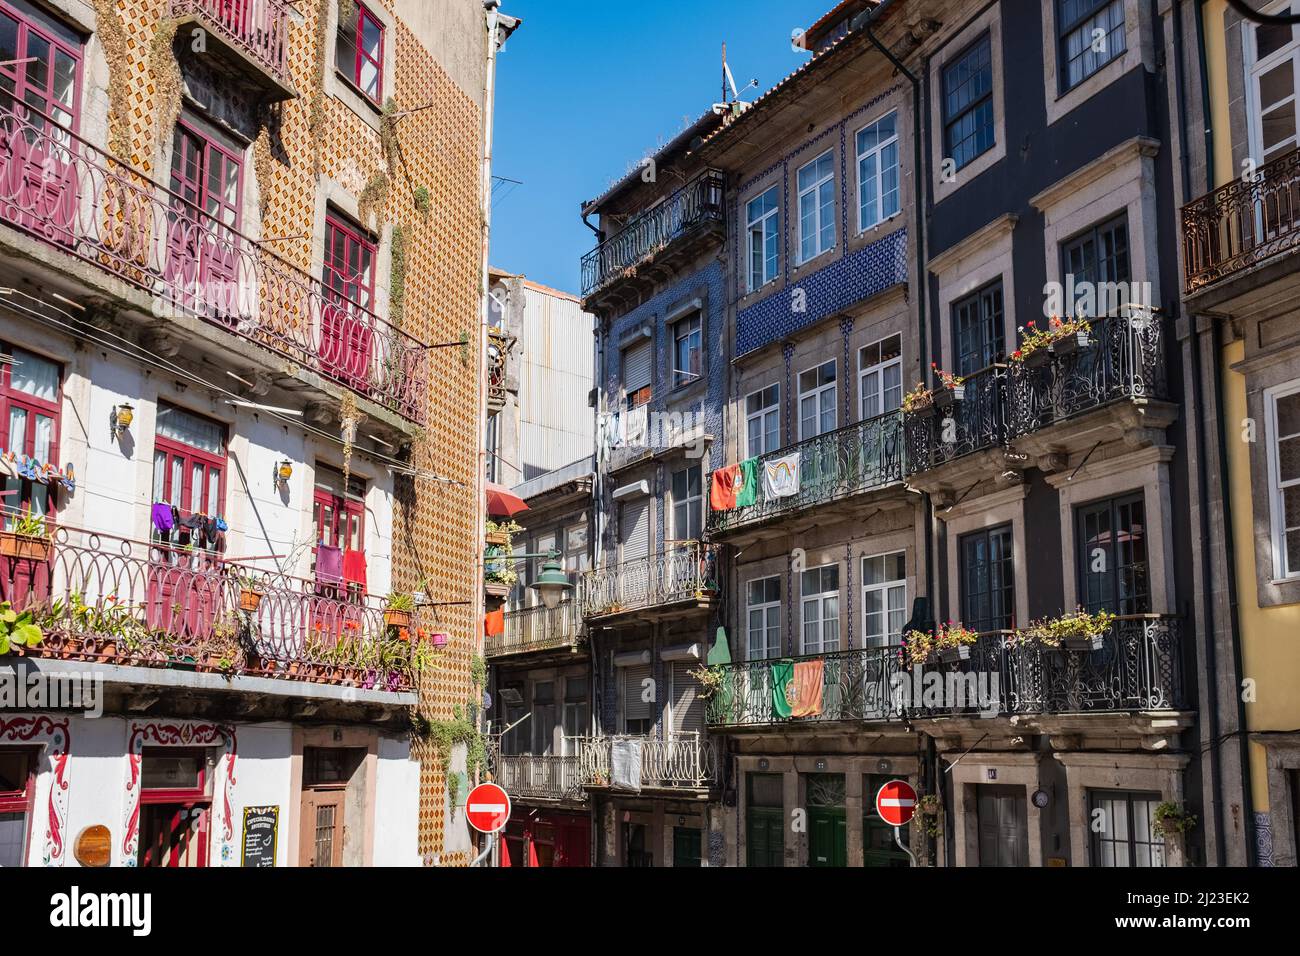 Wohngebäude mit bunten Balkonen und typisch portugiesischen Fliesen in Porto. Stockfoto